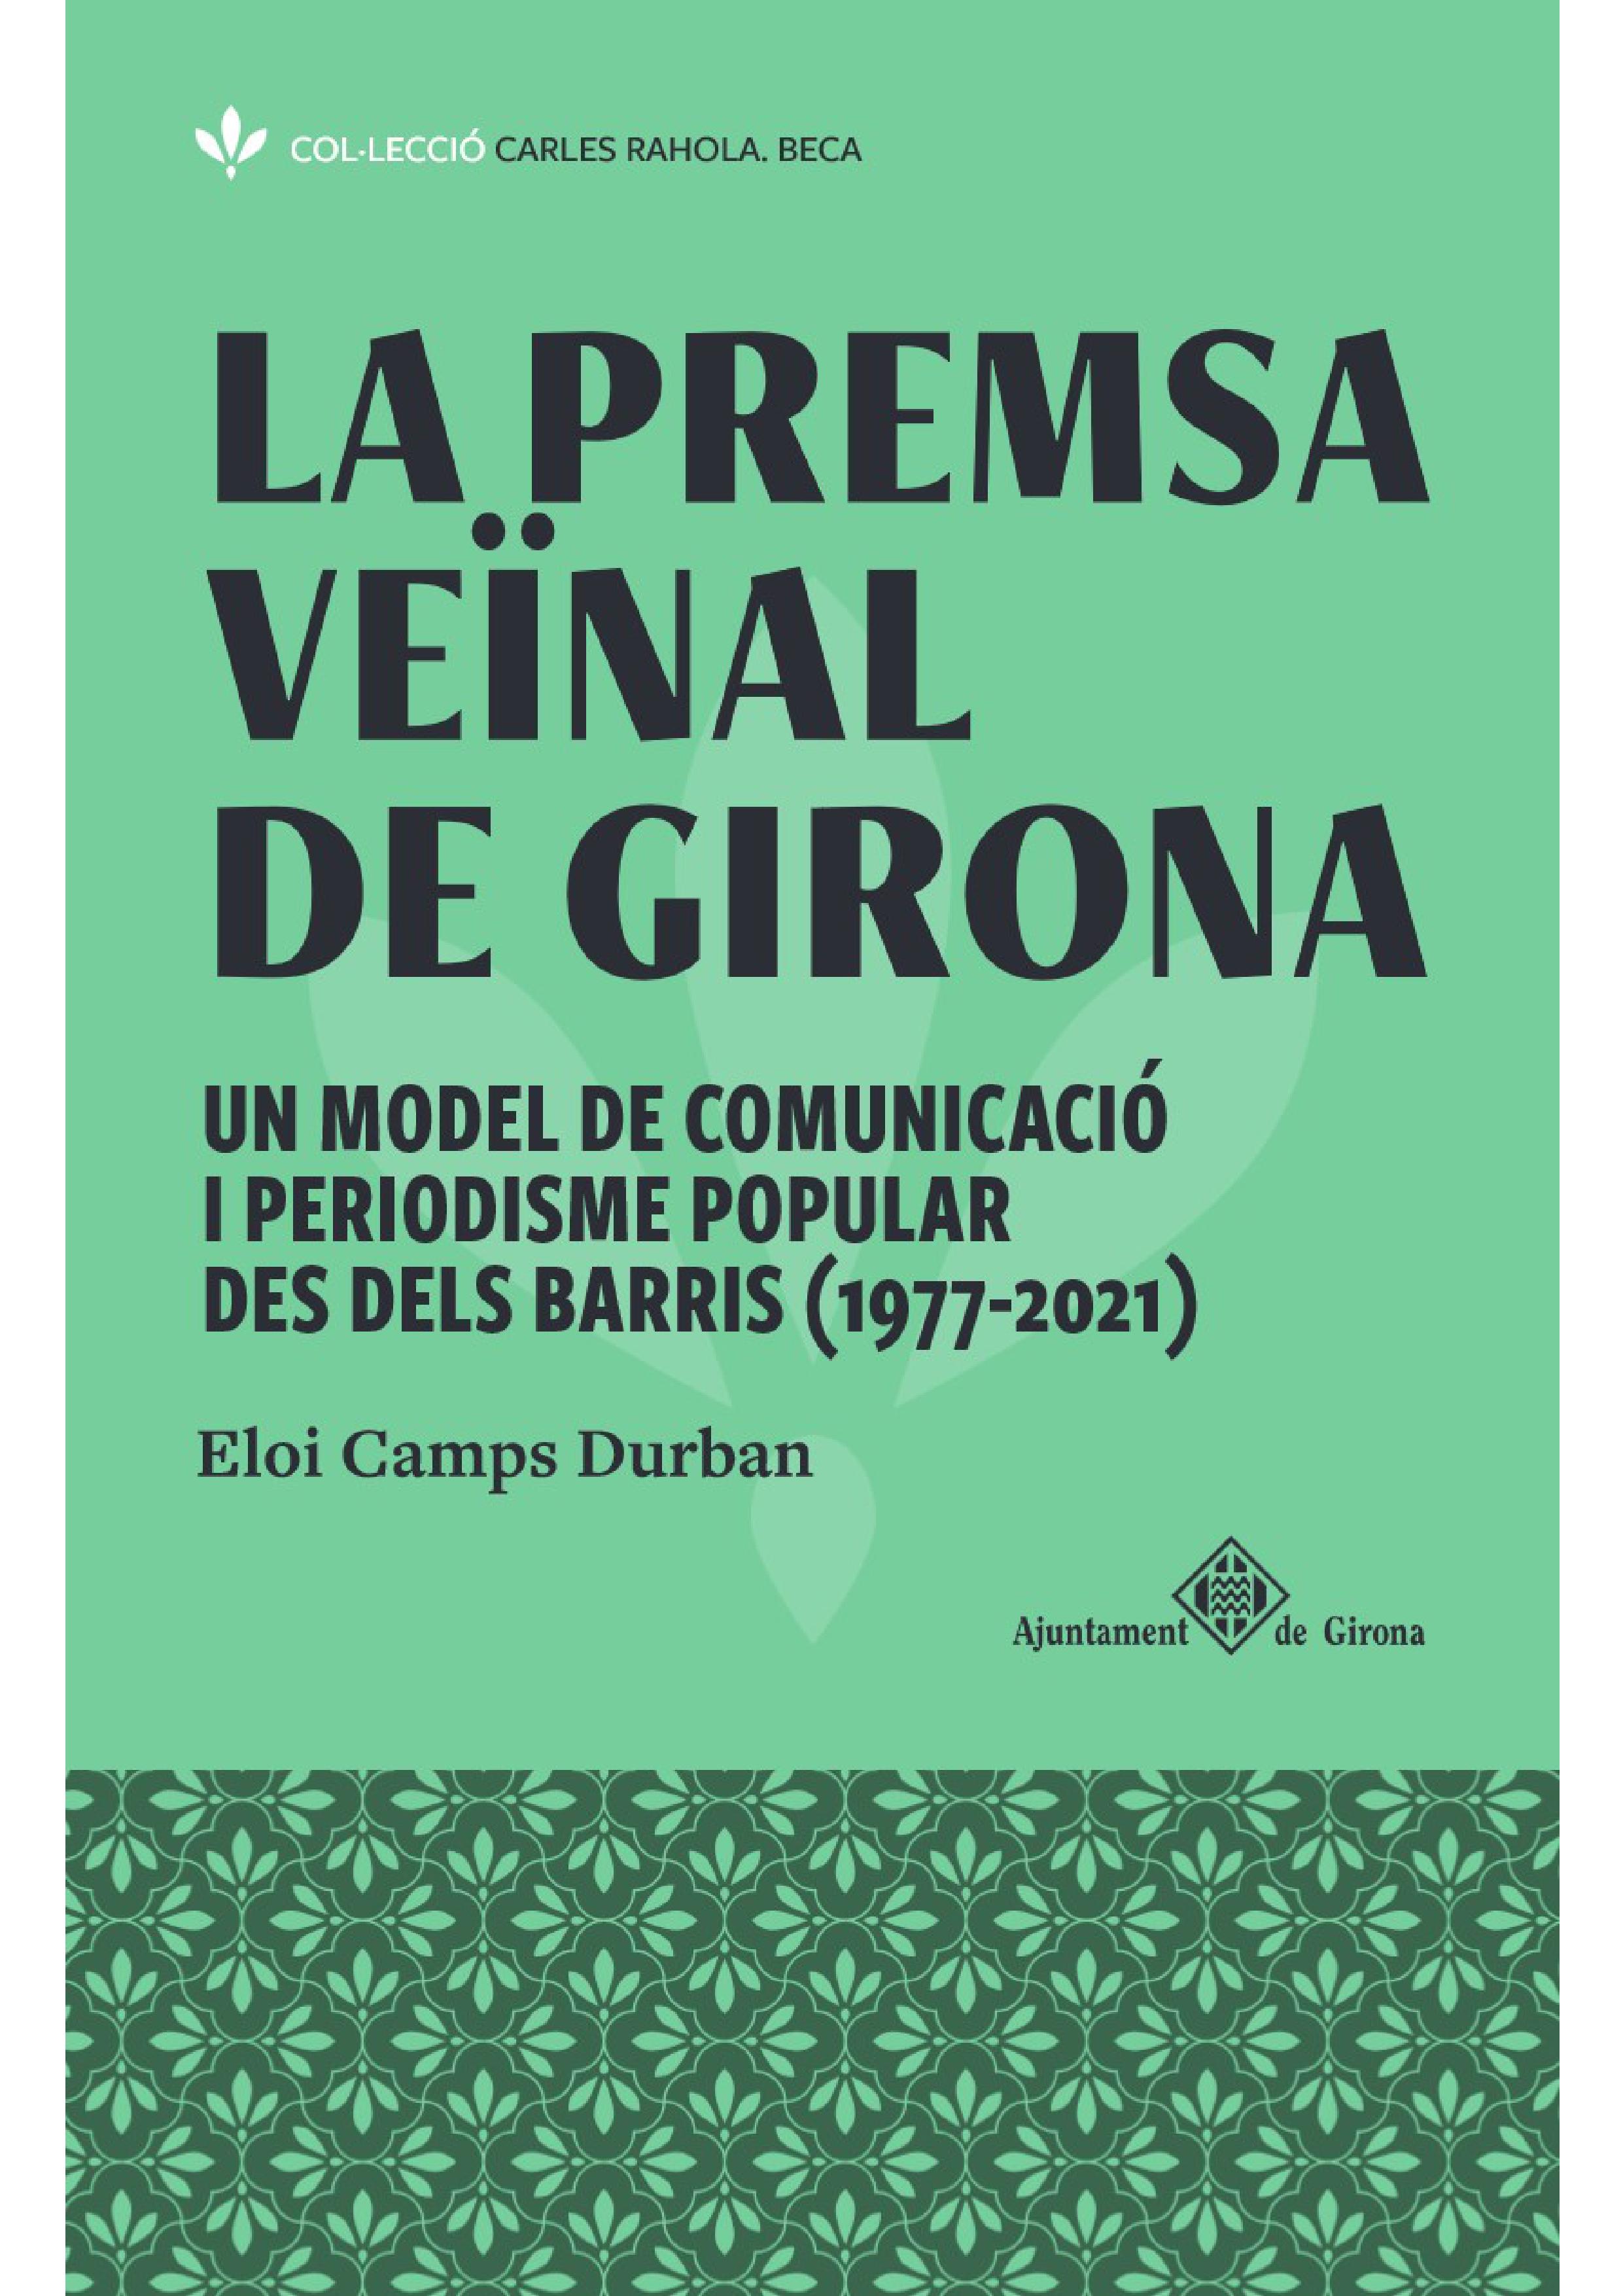 La premsa veïnal a Girona, el nou llibre d'Eloi Camps